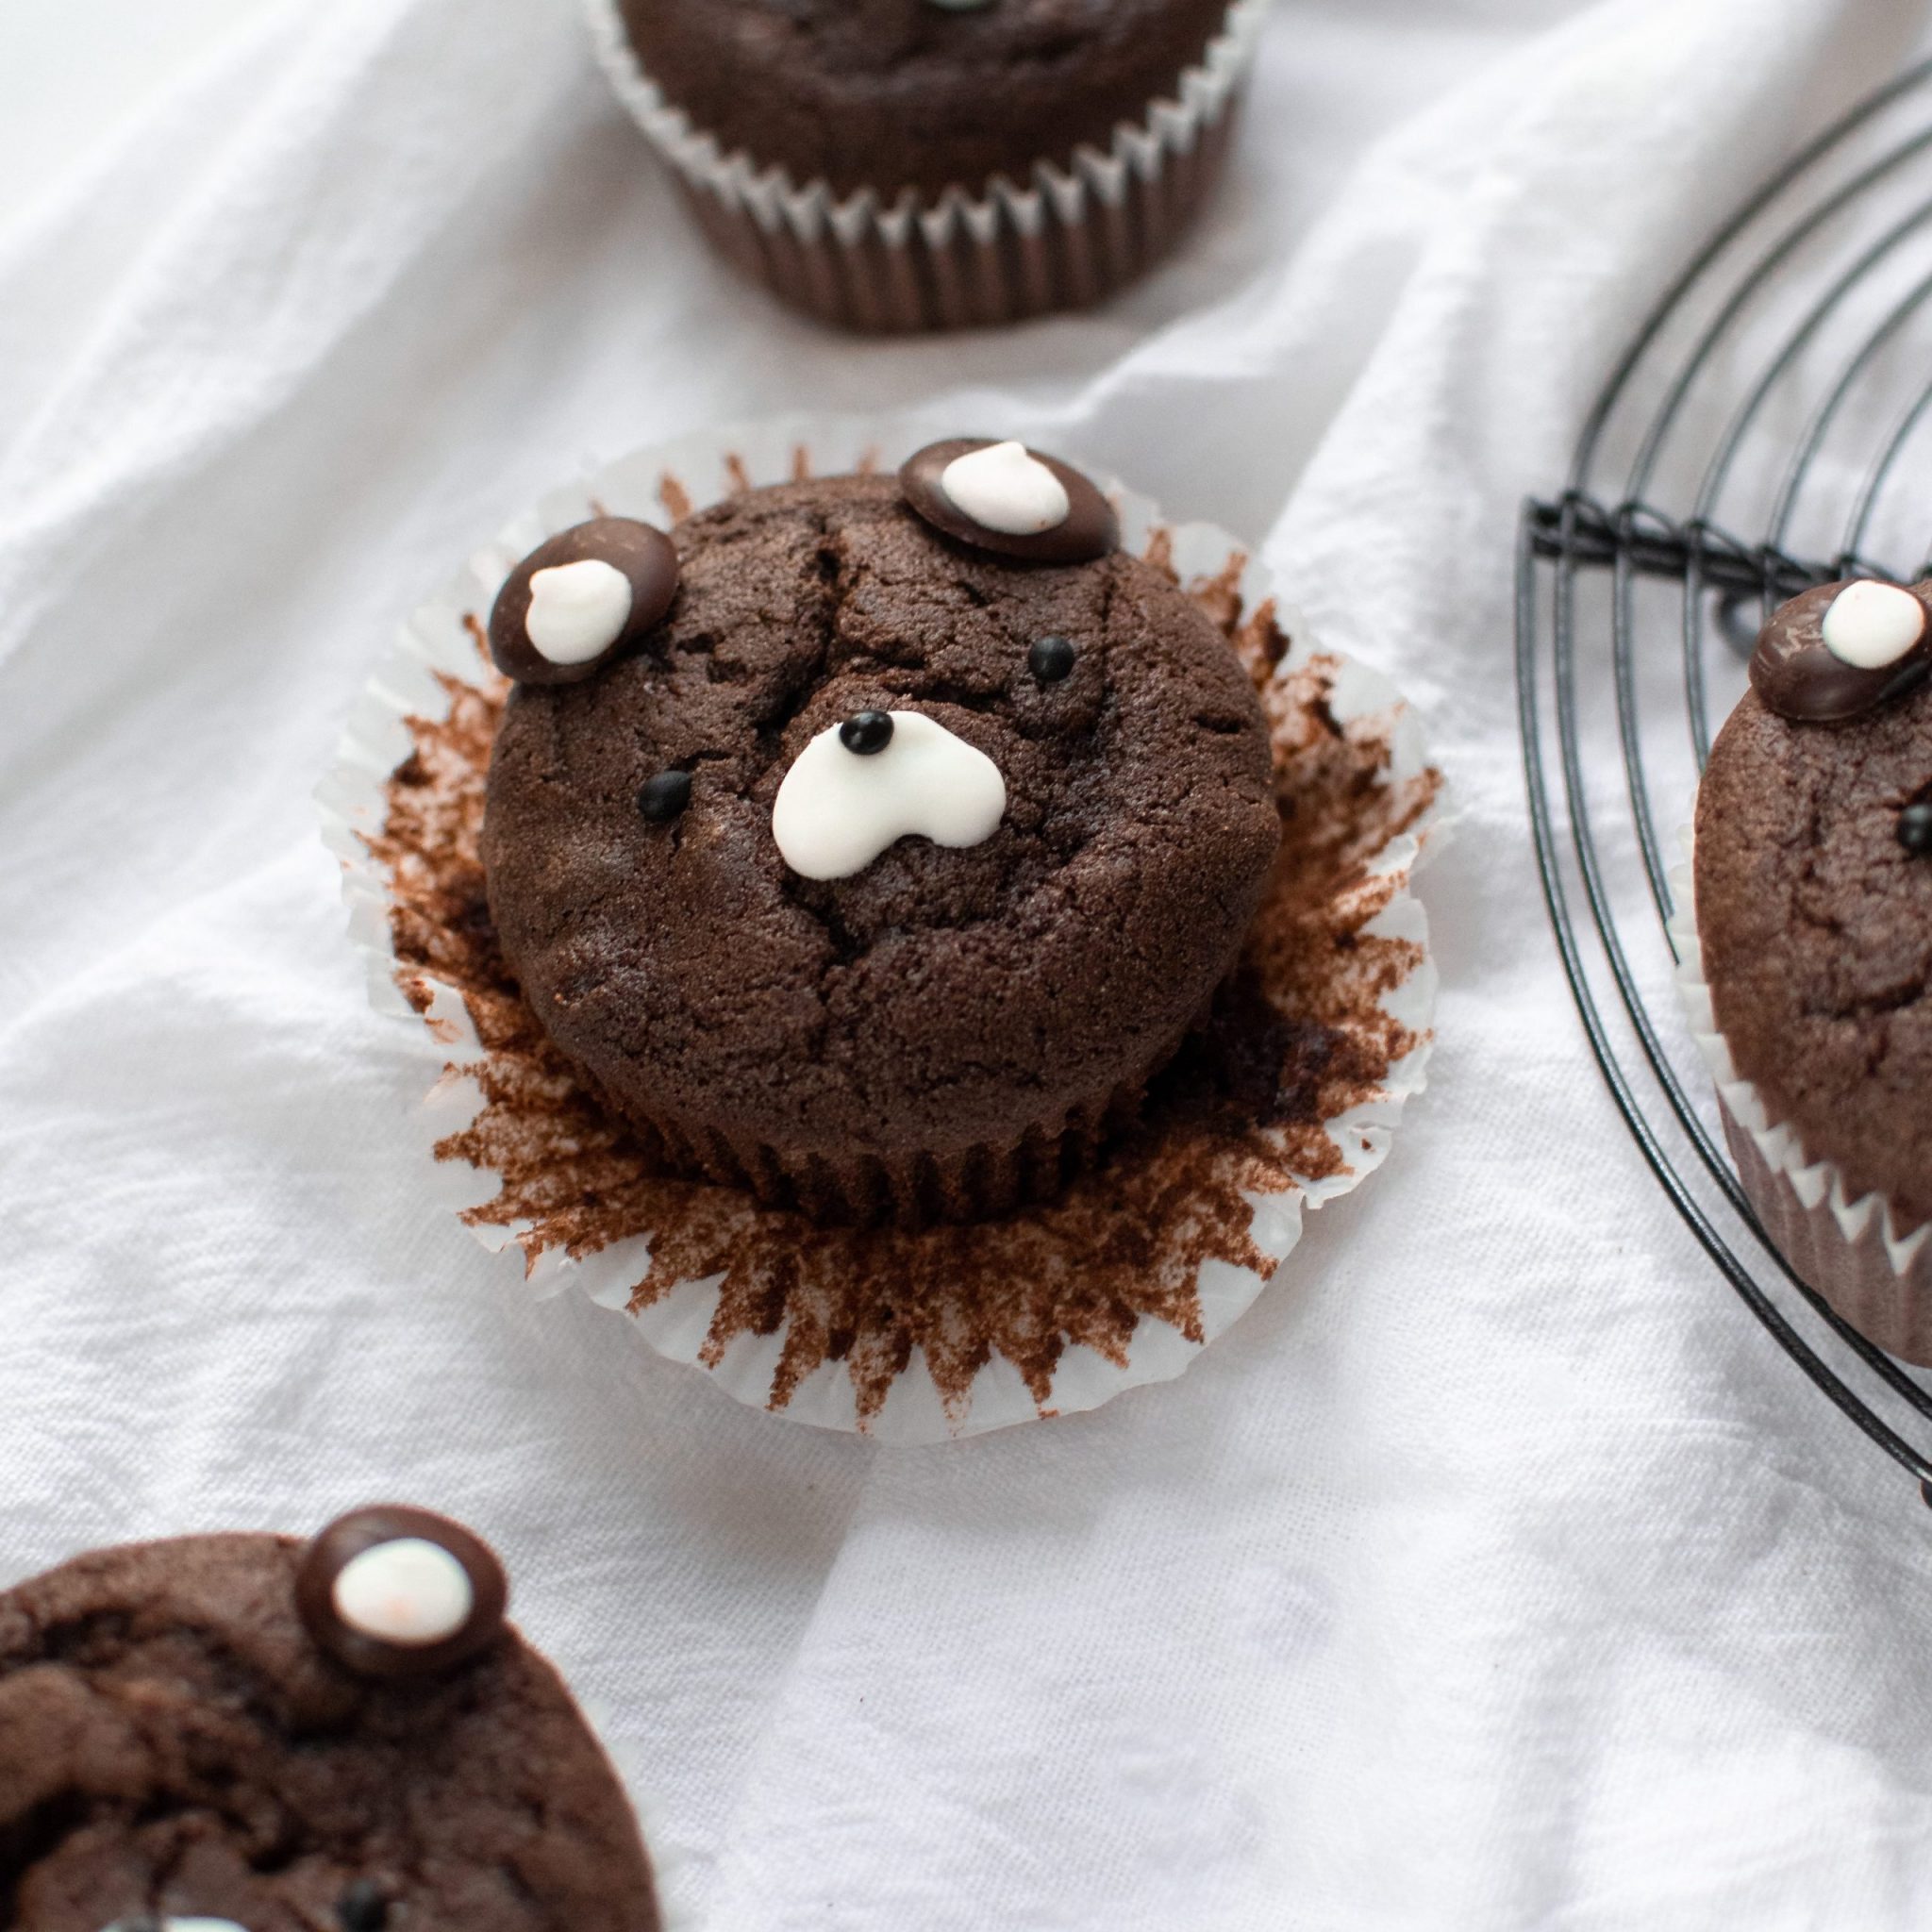 Bear-Shaped Chocolate Mochiko Muffins (Gluten-Free)